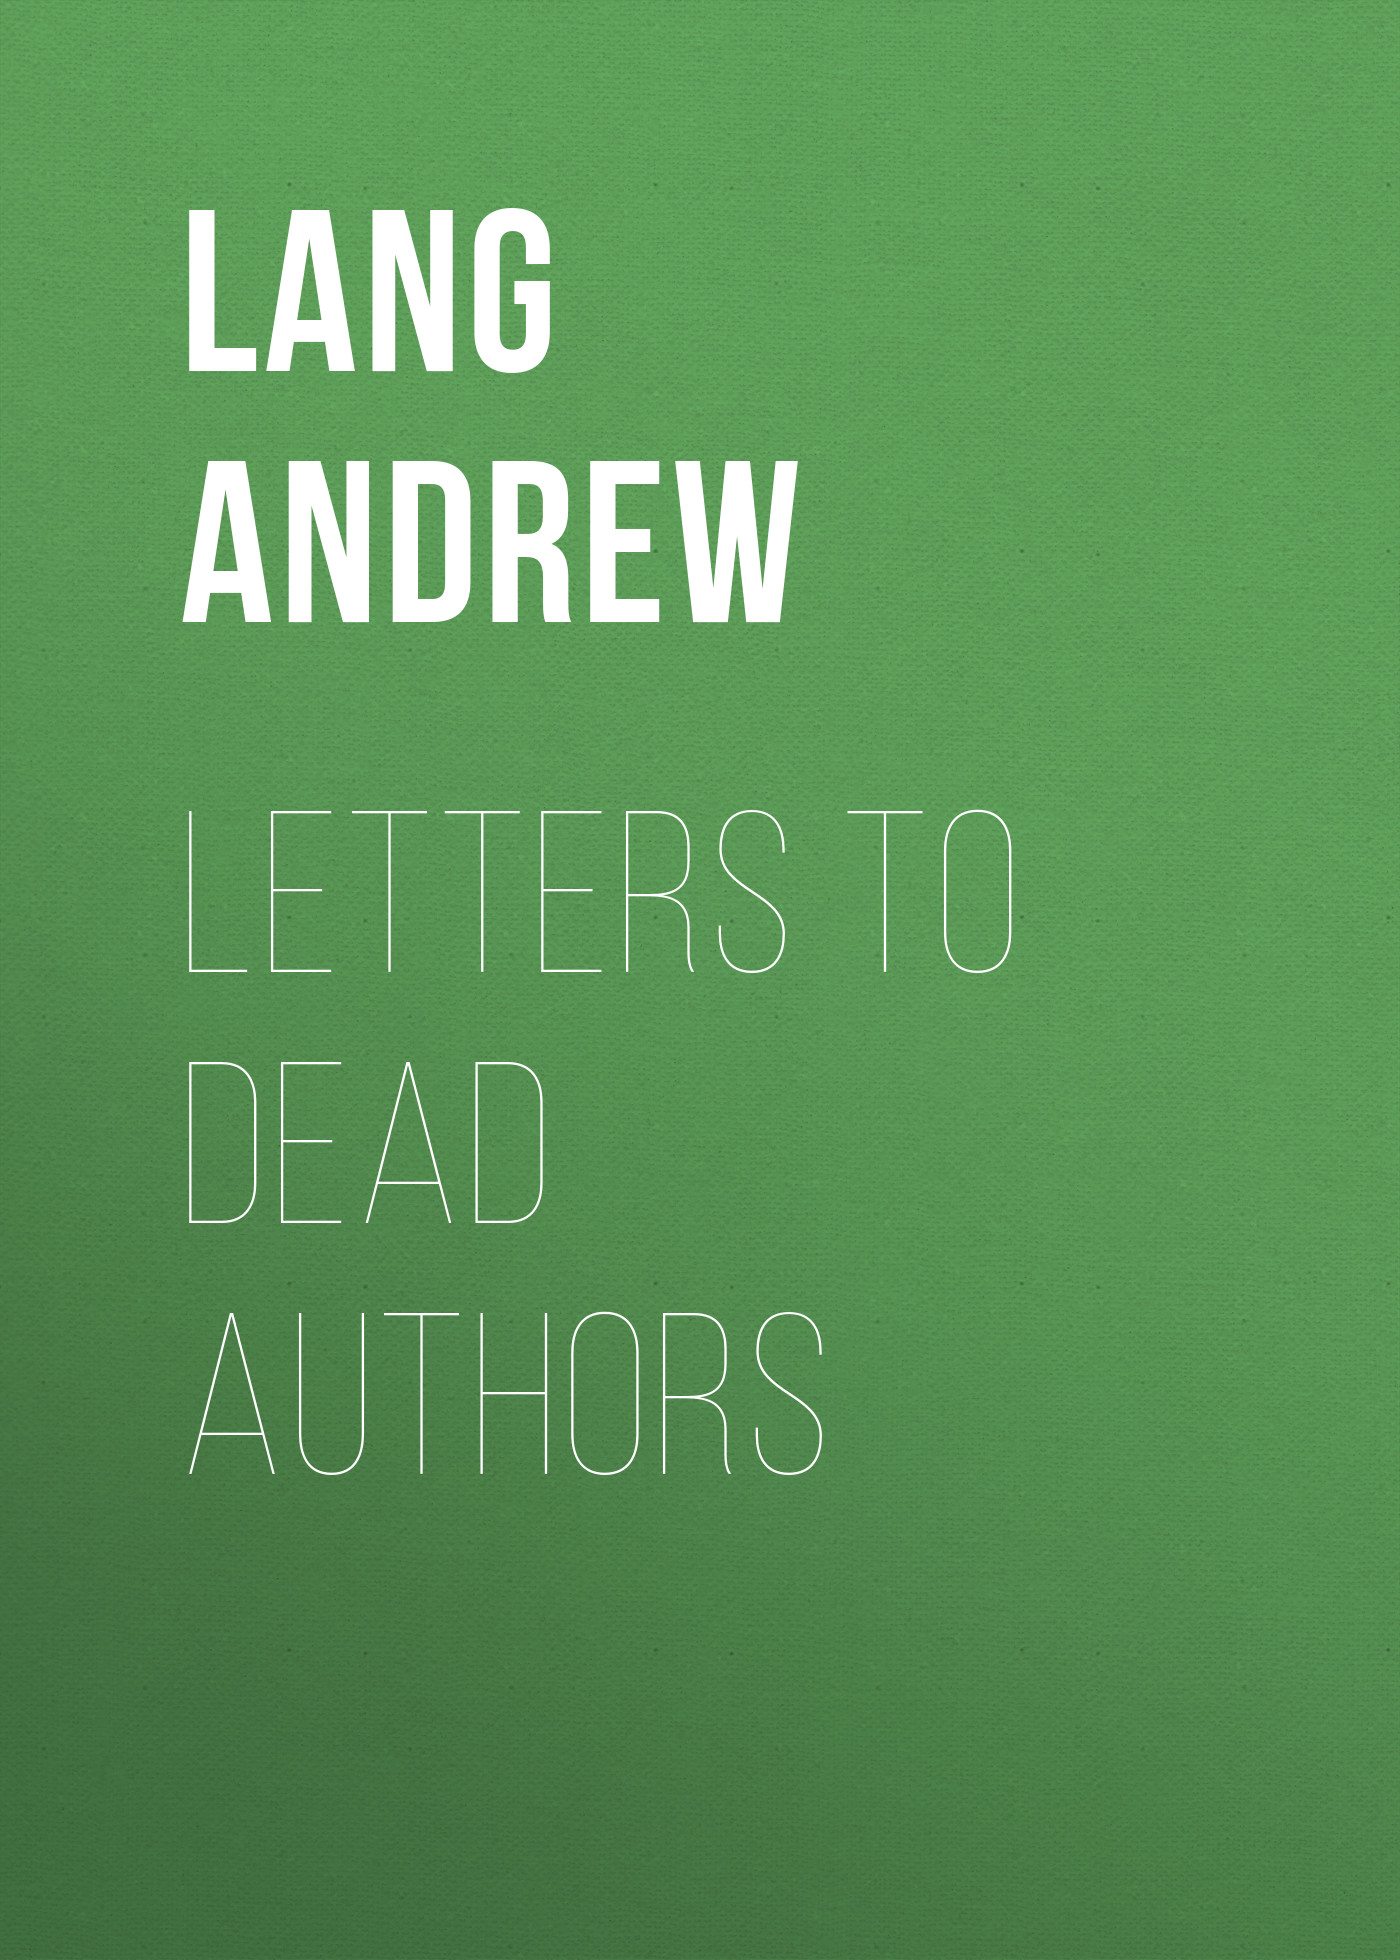 Книга Letters to Dead Authors из серии , созданная Andrew Lang, может относится к жанру Зарубежная старинная литература, Зарубежная классика. Стоимость электронной книги Letters to Dead Authors с идентификатором 25229044 составляет 0 руб.